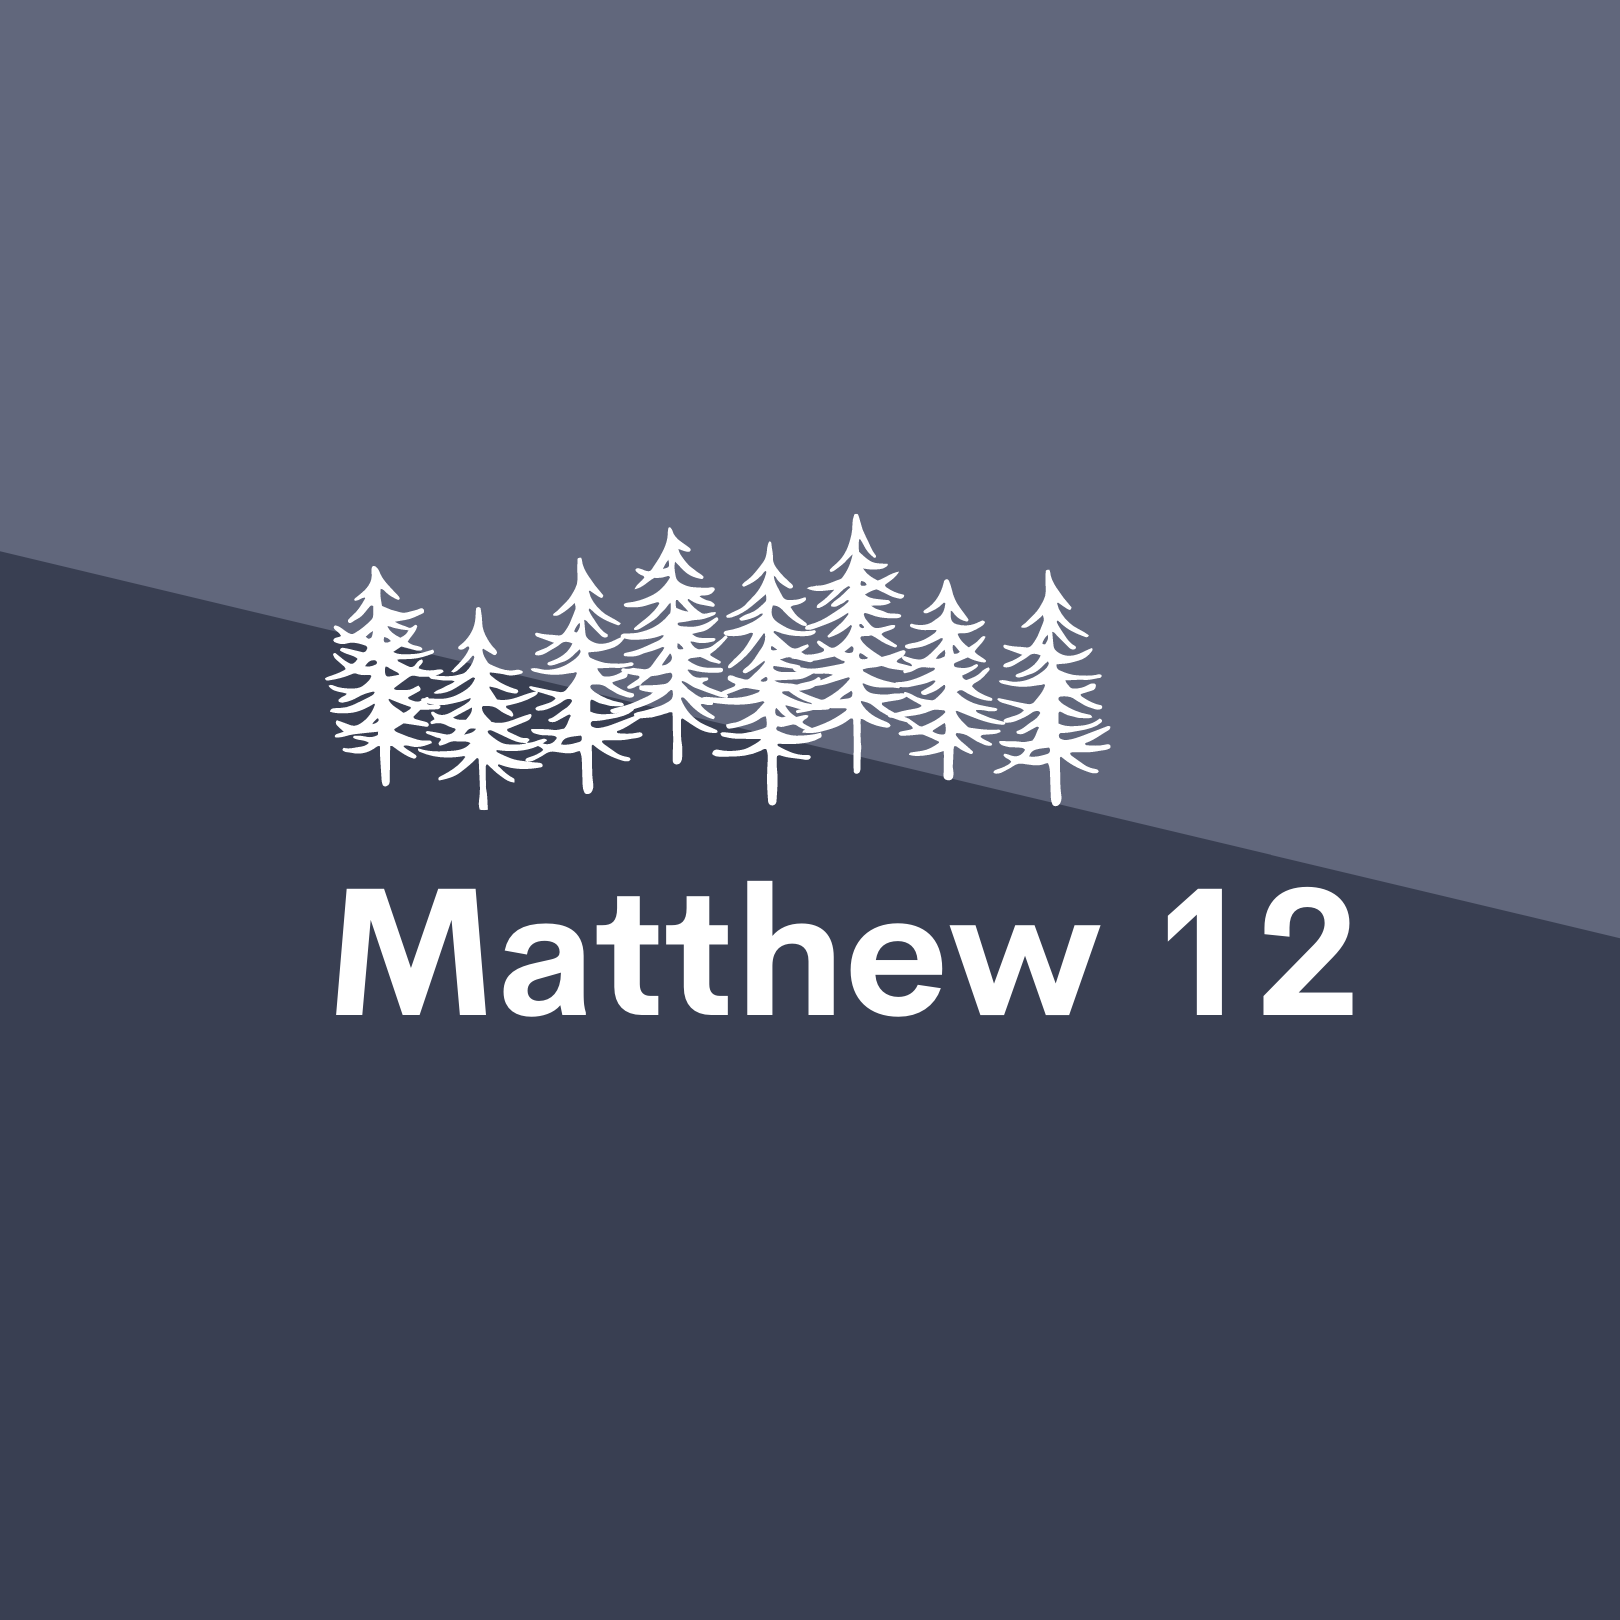 Jan 19: Matthew 12